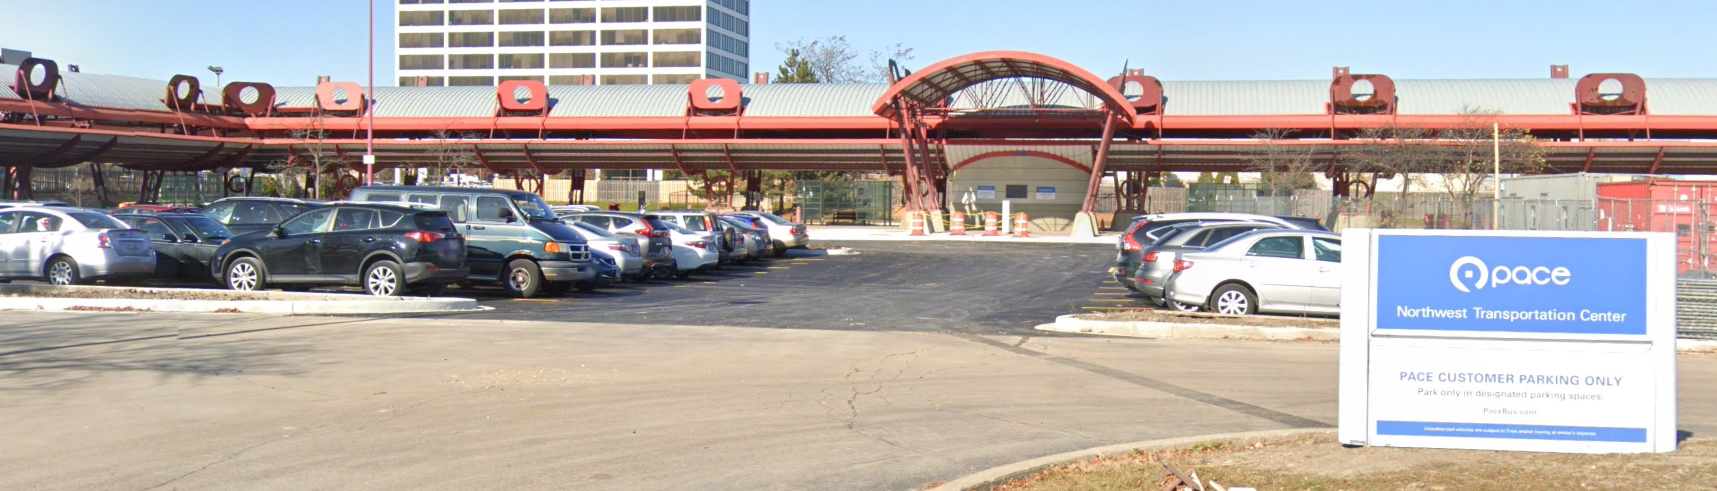 Image of Northwest Transit Center Park-n-Ride entrance